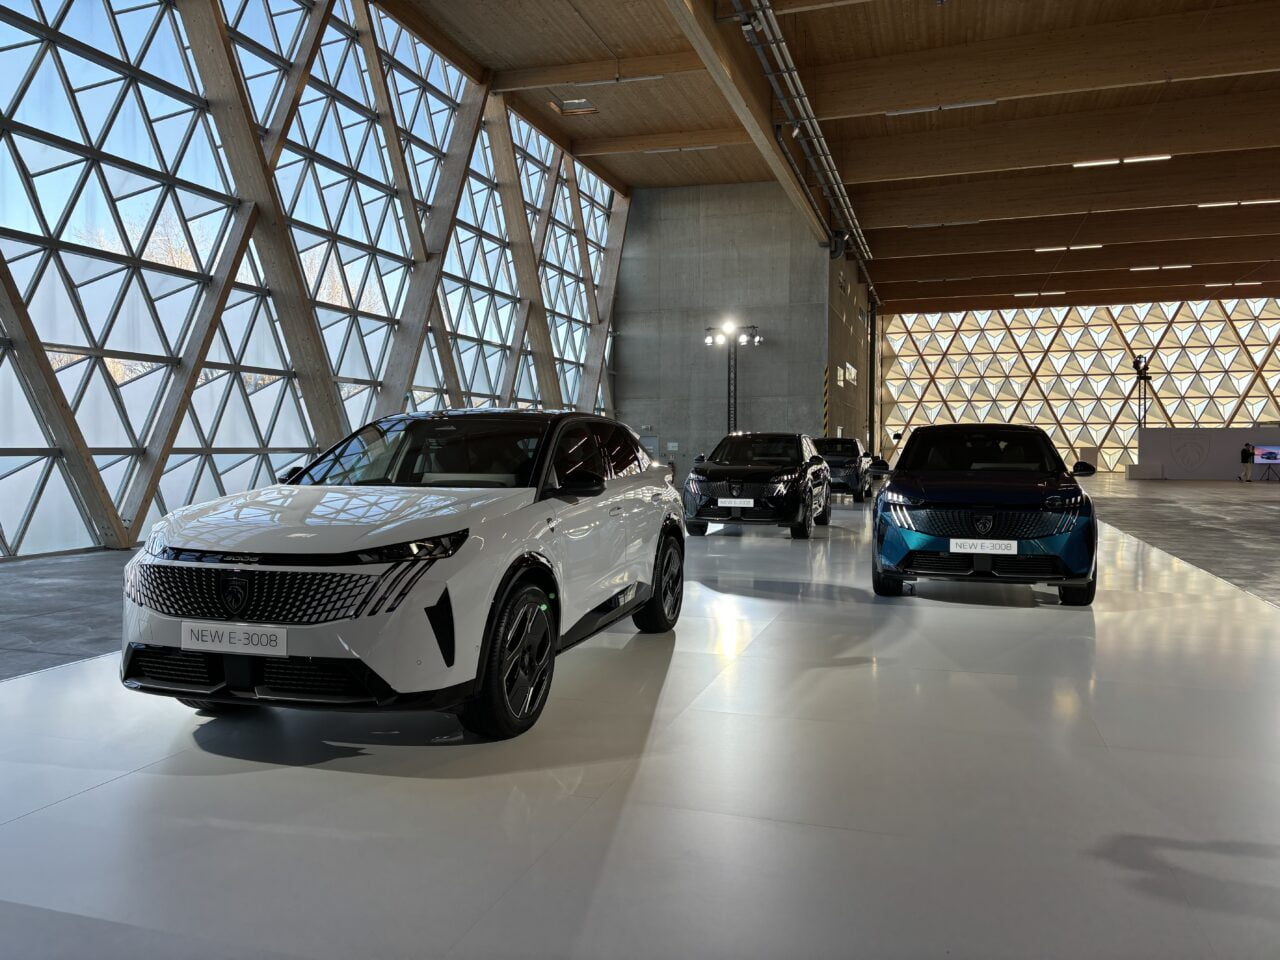 Pokaz salonu samochodowego z kilkoma nowymi modelami samochodów, w tym przedni widok białego samochodu oznaczonego jako NEW E-3008. Wnętrze salonu jest jasne, z dużymi, geometrycznymi oknami i drewnianym sufitem.